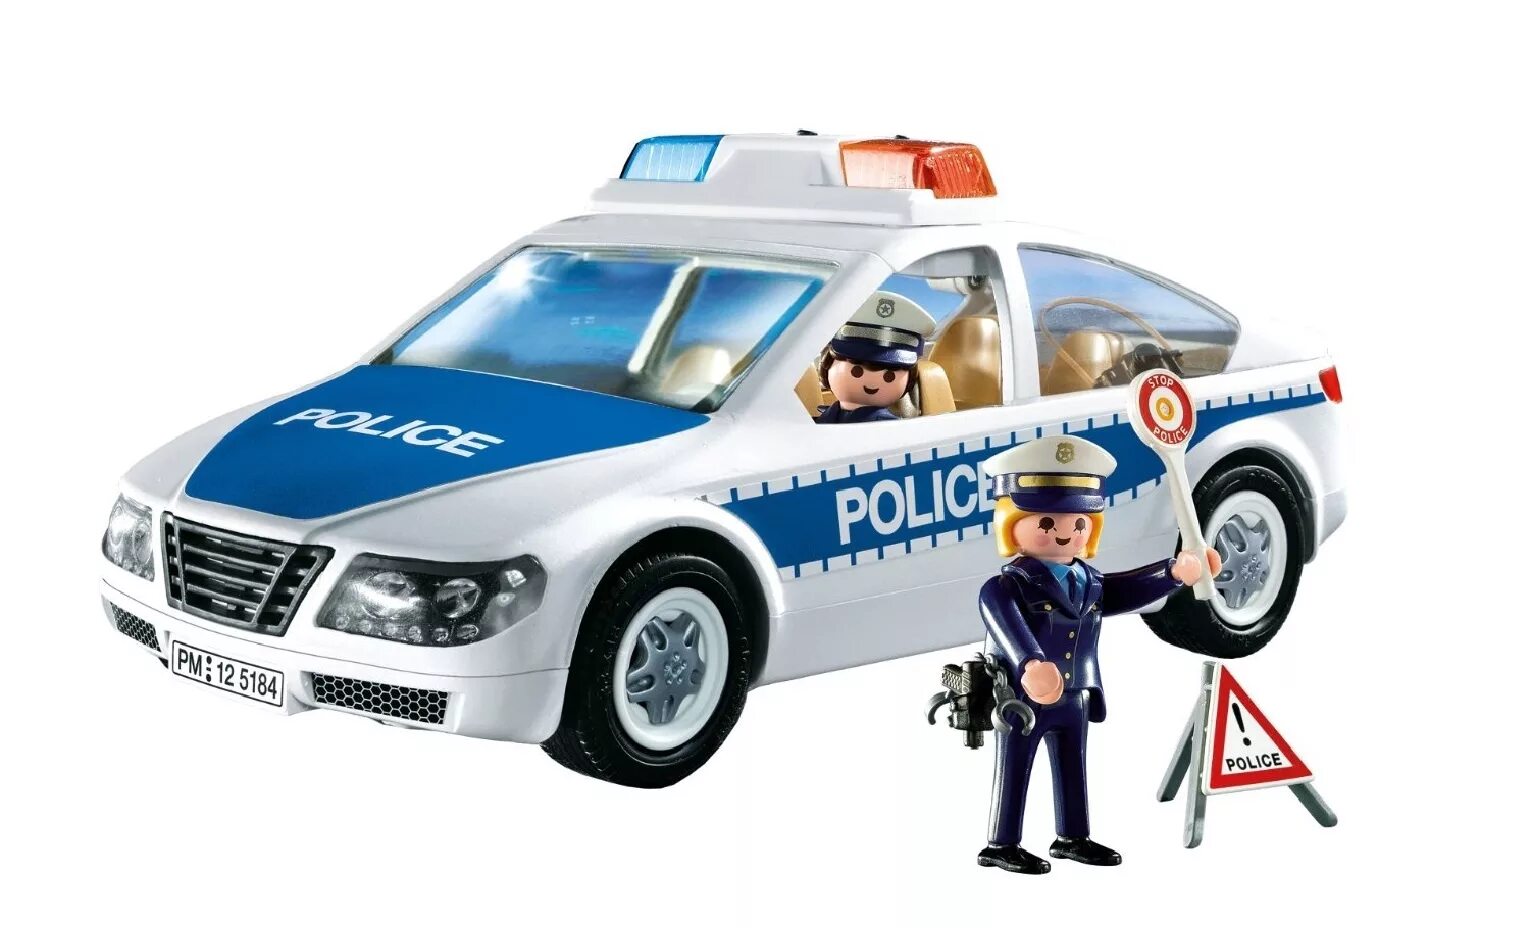 Playmobil полиция 6920. Плеймобил полиция 5184. Плеймобиль полиция полиц маш. Playmobil Police 5184. Про полицейскую машину для мальчиков